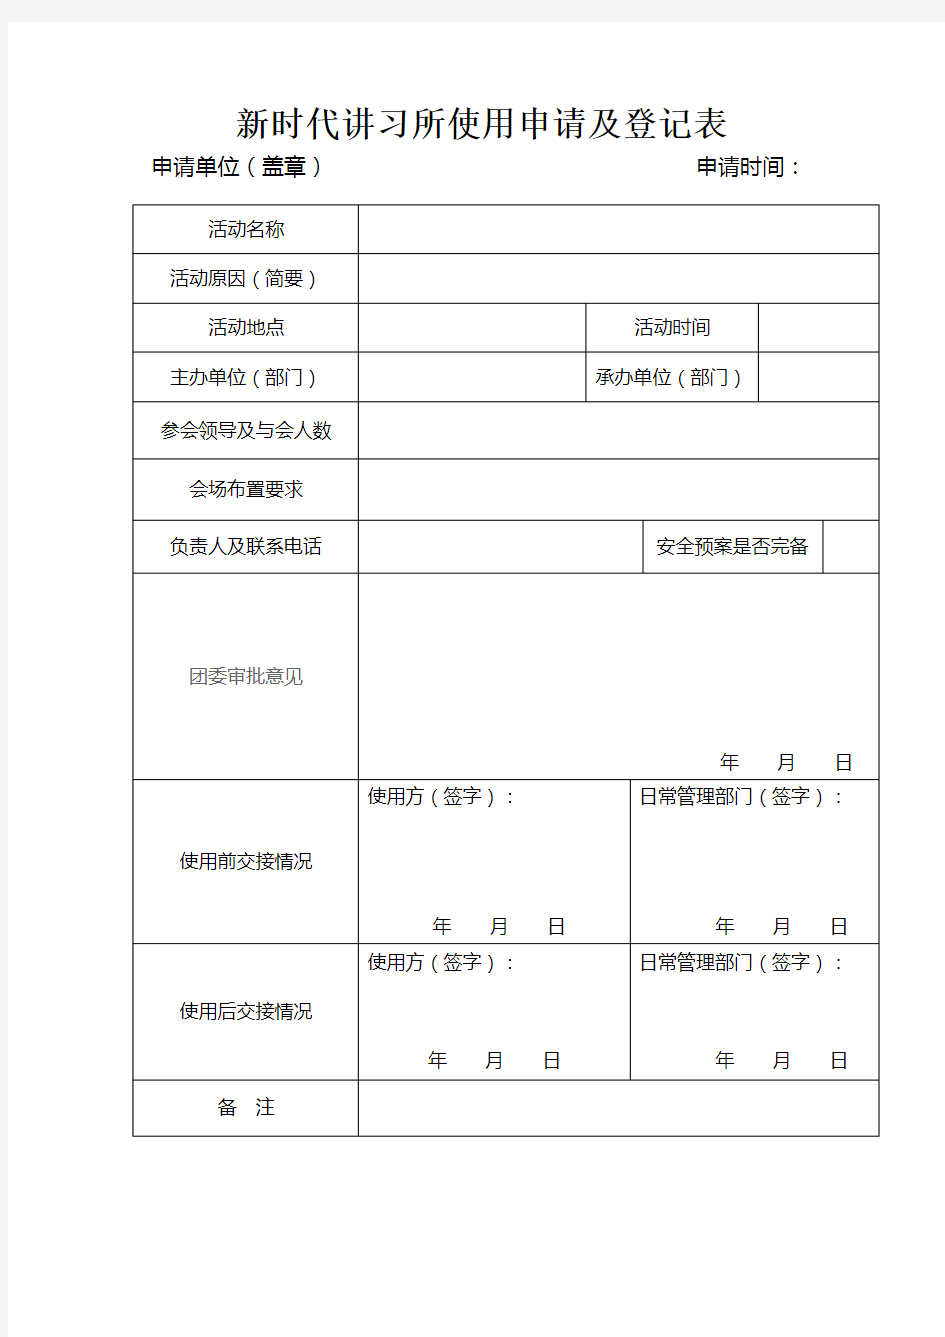 新时代讲习所使用申请及登记表(1)(2)